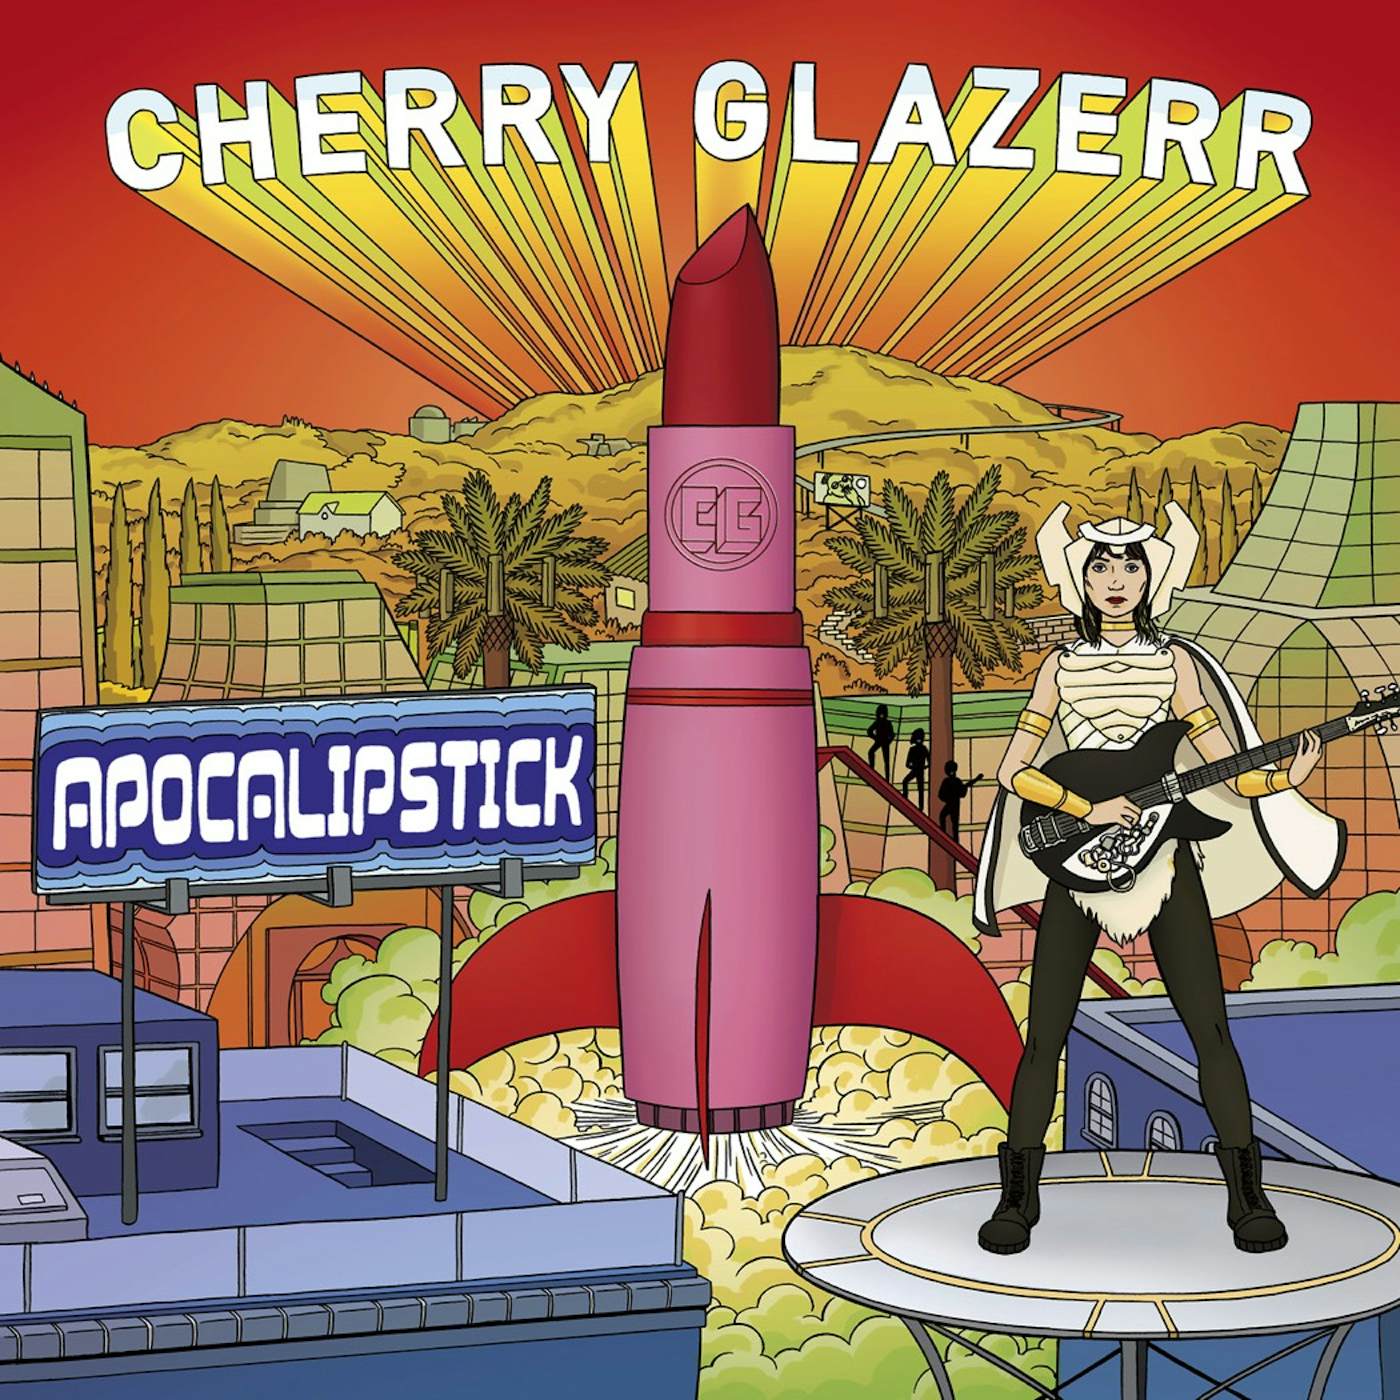 Cherry Glazerr APOCALIPSTICK CD